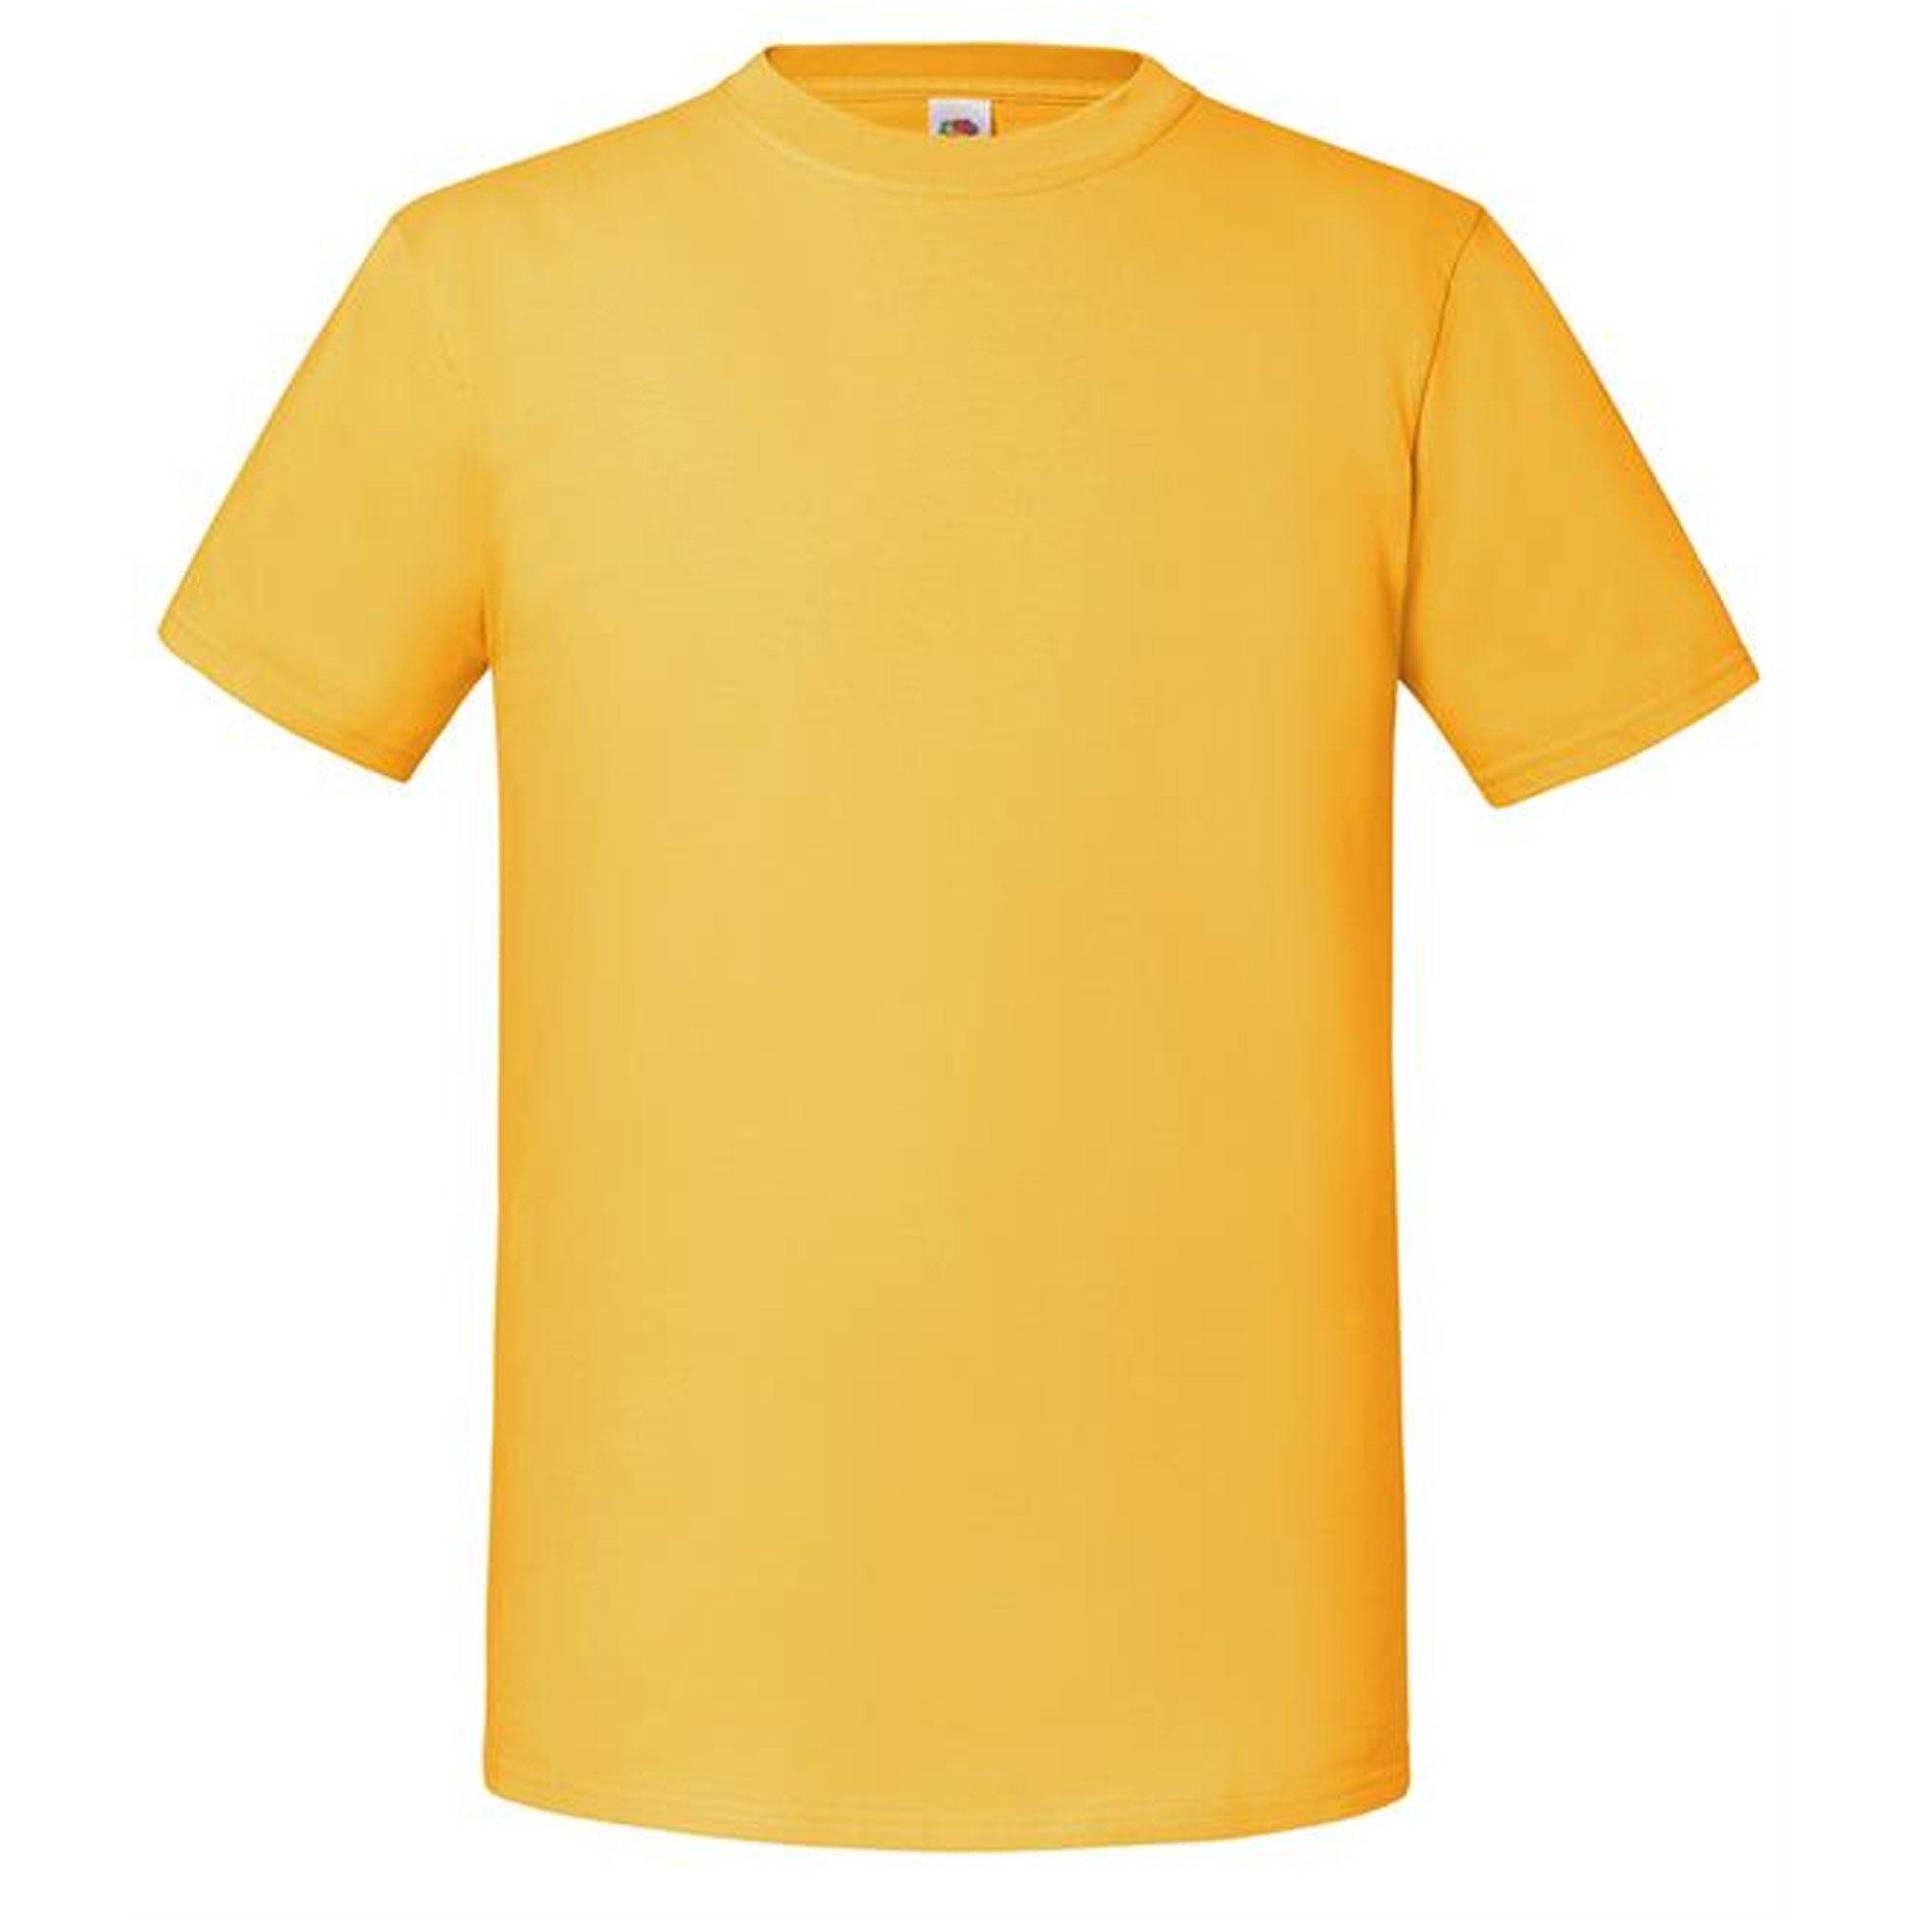 Premium Tshirt Damen Gelb Bunt XL von Fruit of the Loom